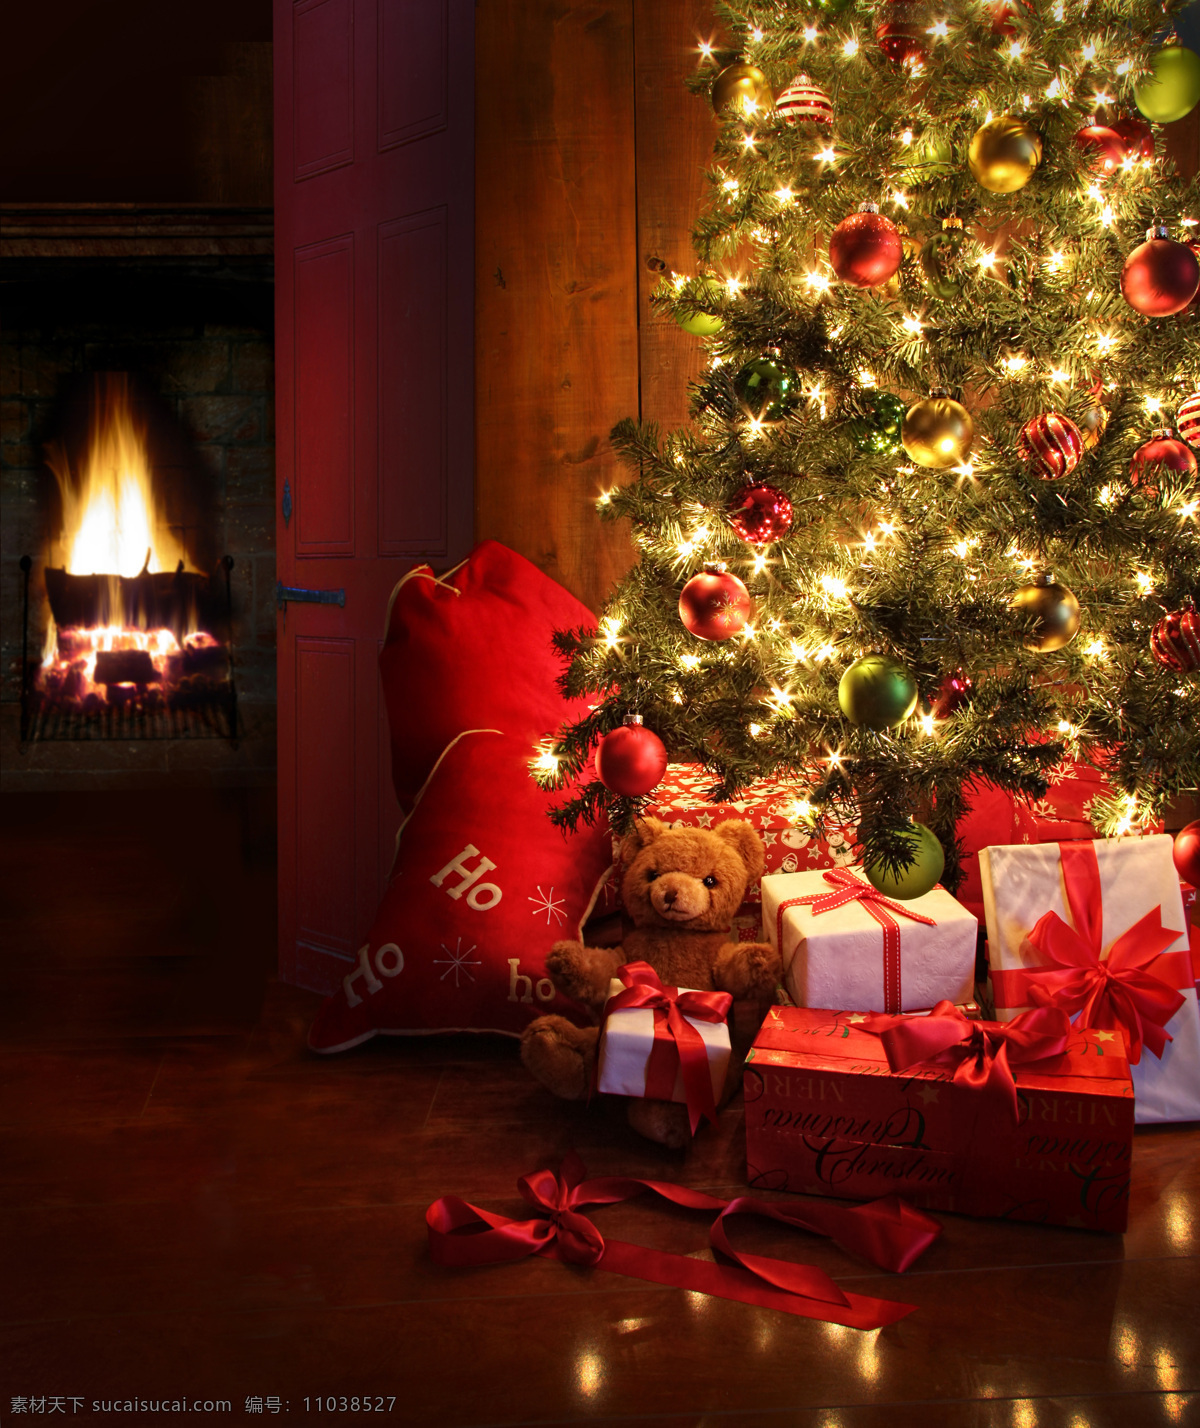 圣诞礼品 素材图片 礼品 礼物 礼盒 圣诞礼物 节日 喜庆 礼包 圣诞球 彩球 圣诞树 壁炉 梦幻光斑 节日庆典 圣诞素材 生活百科